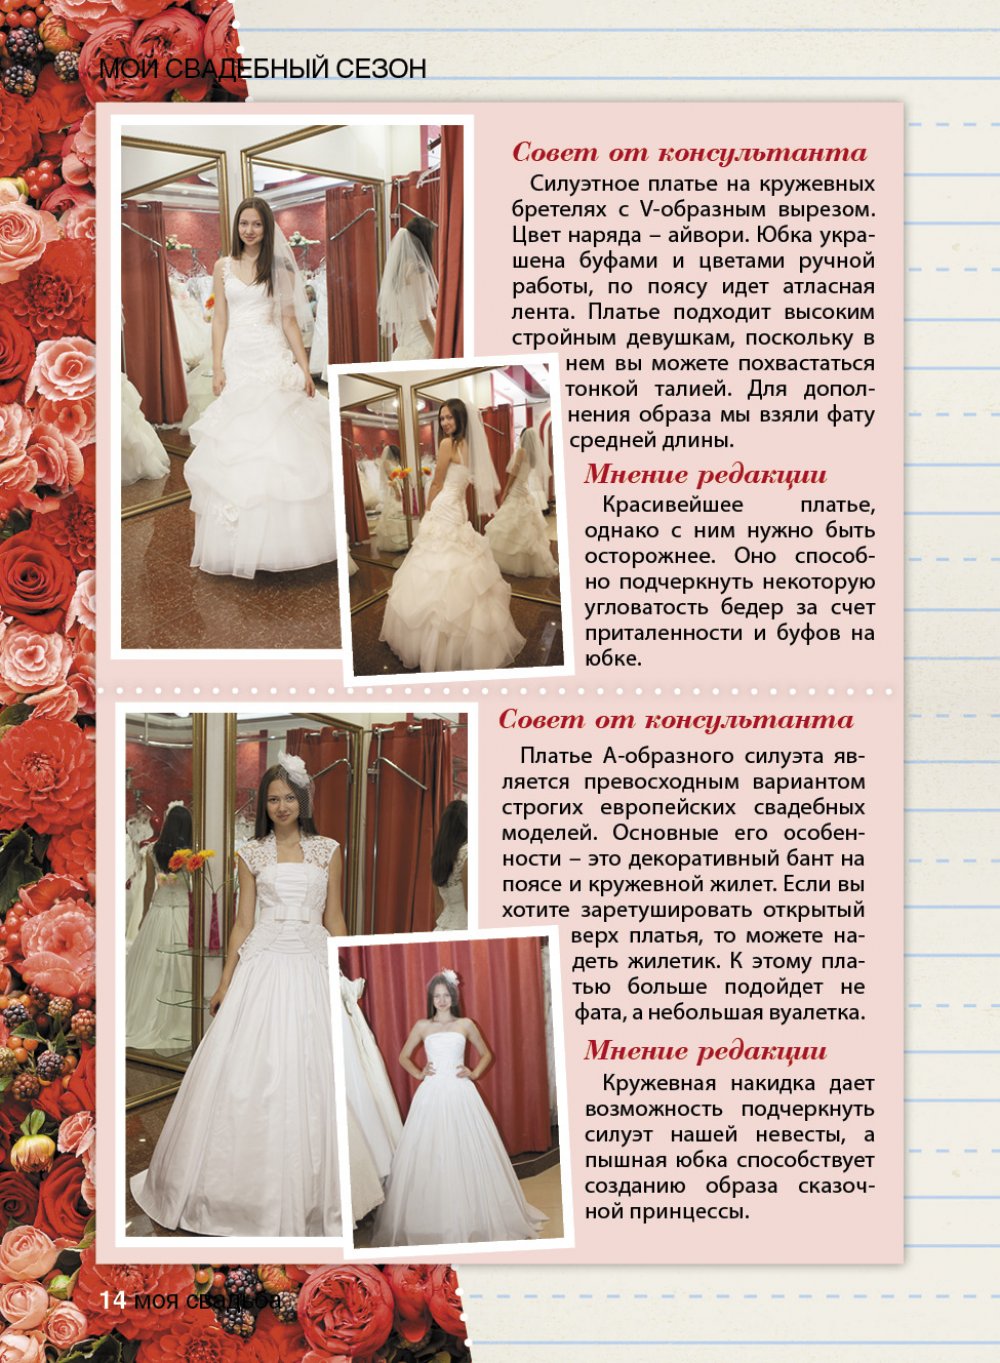 Описание свадебных платьев